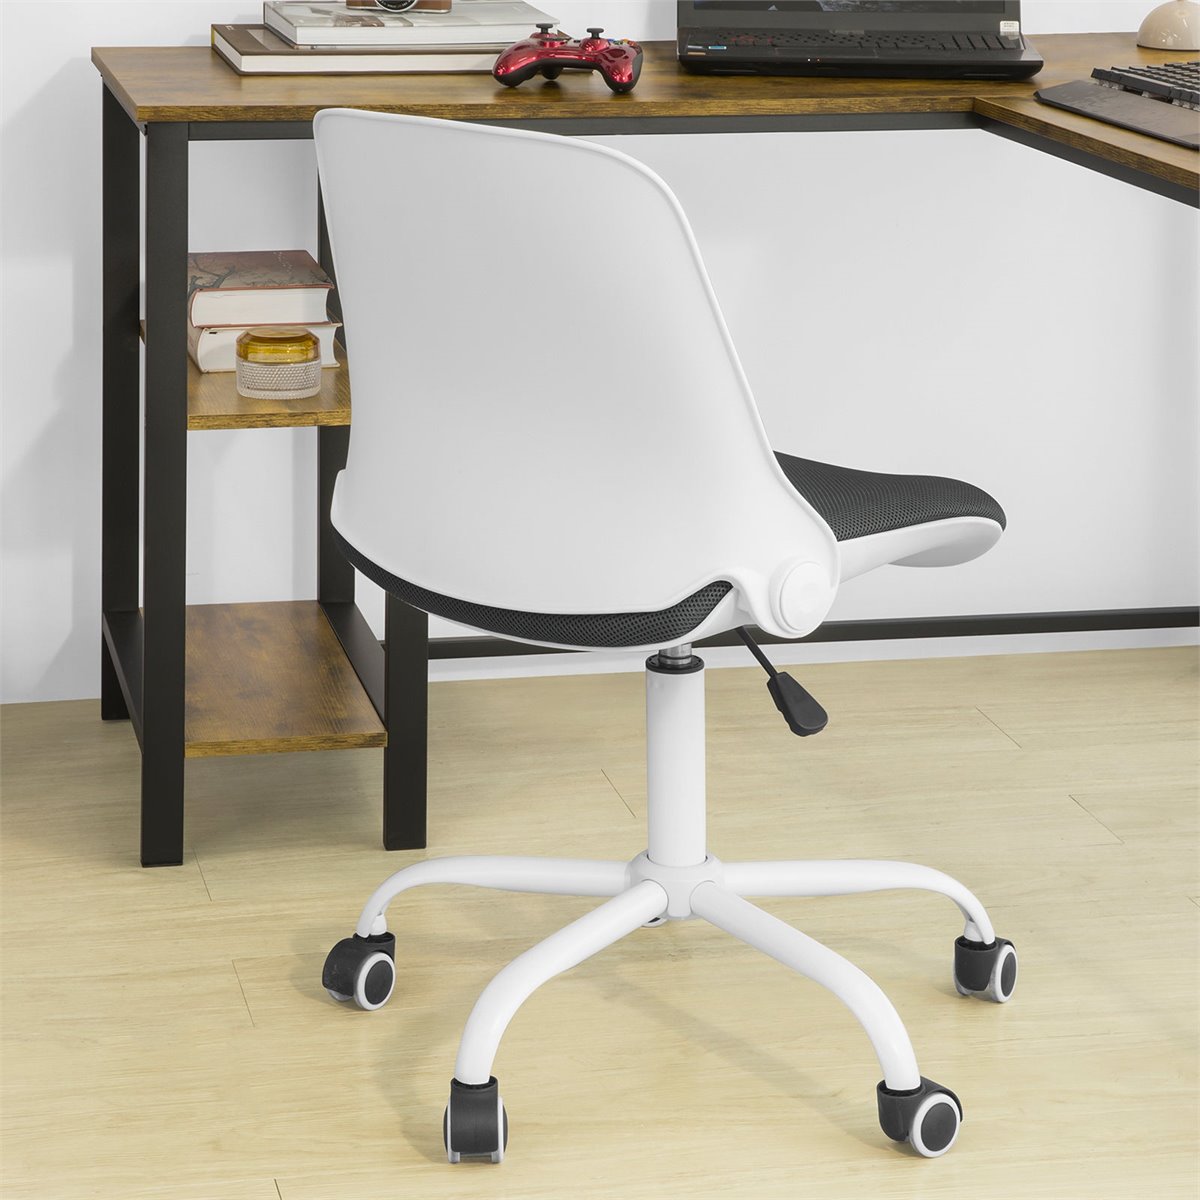 Silla ergonómica de oficina con respaldo plegable metal blanco